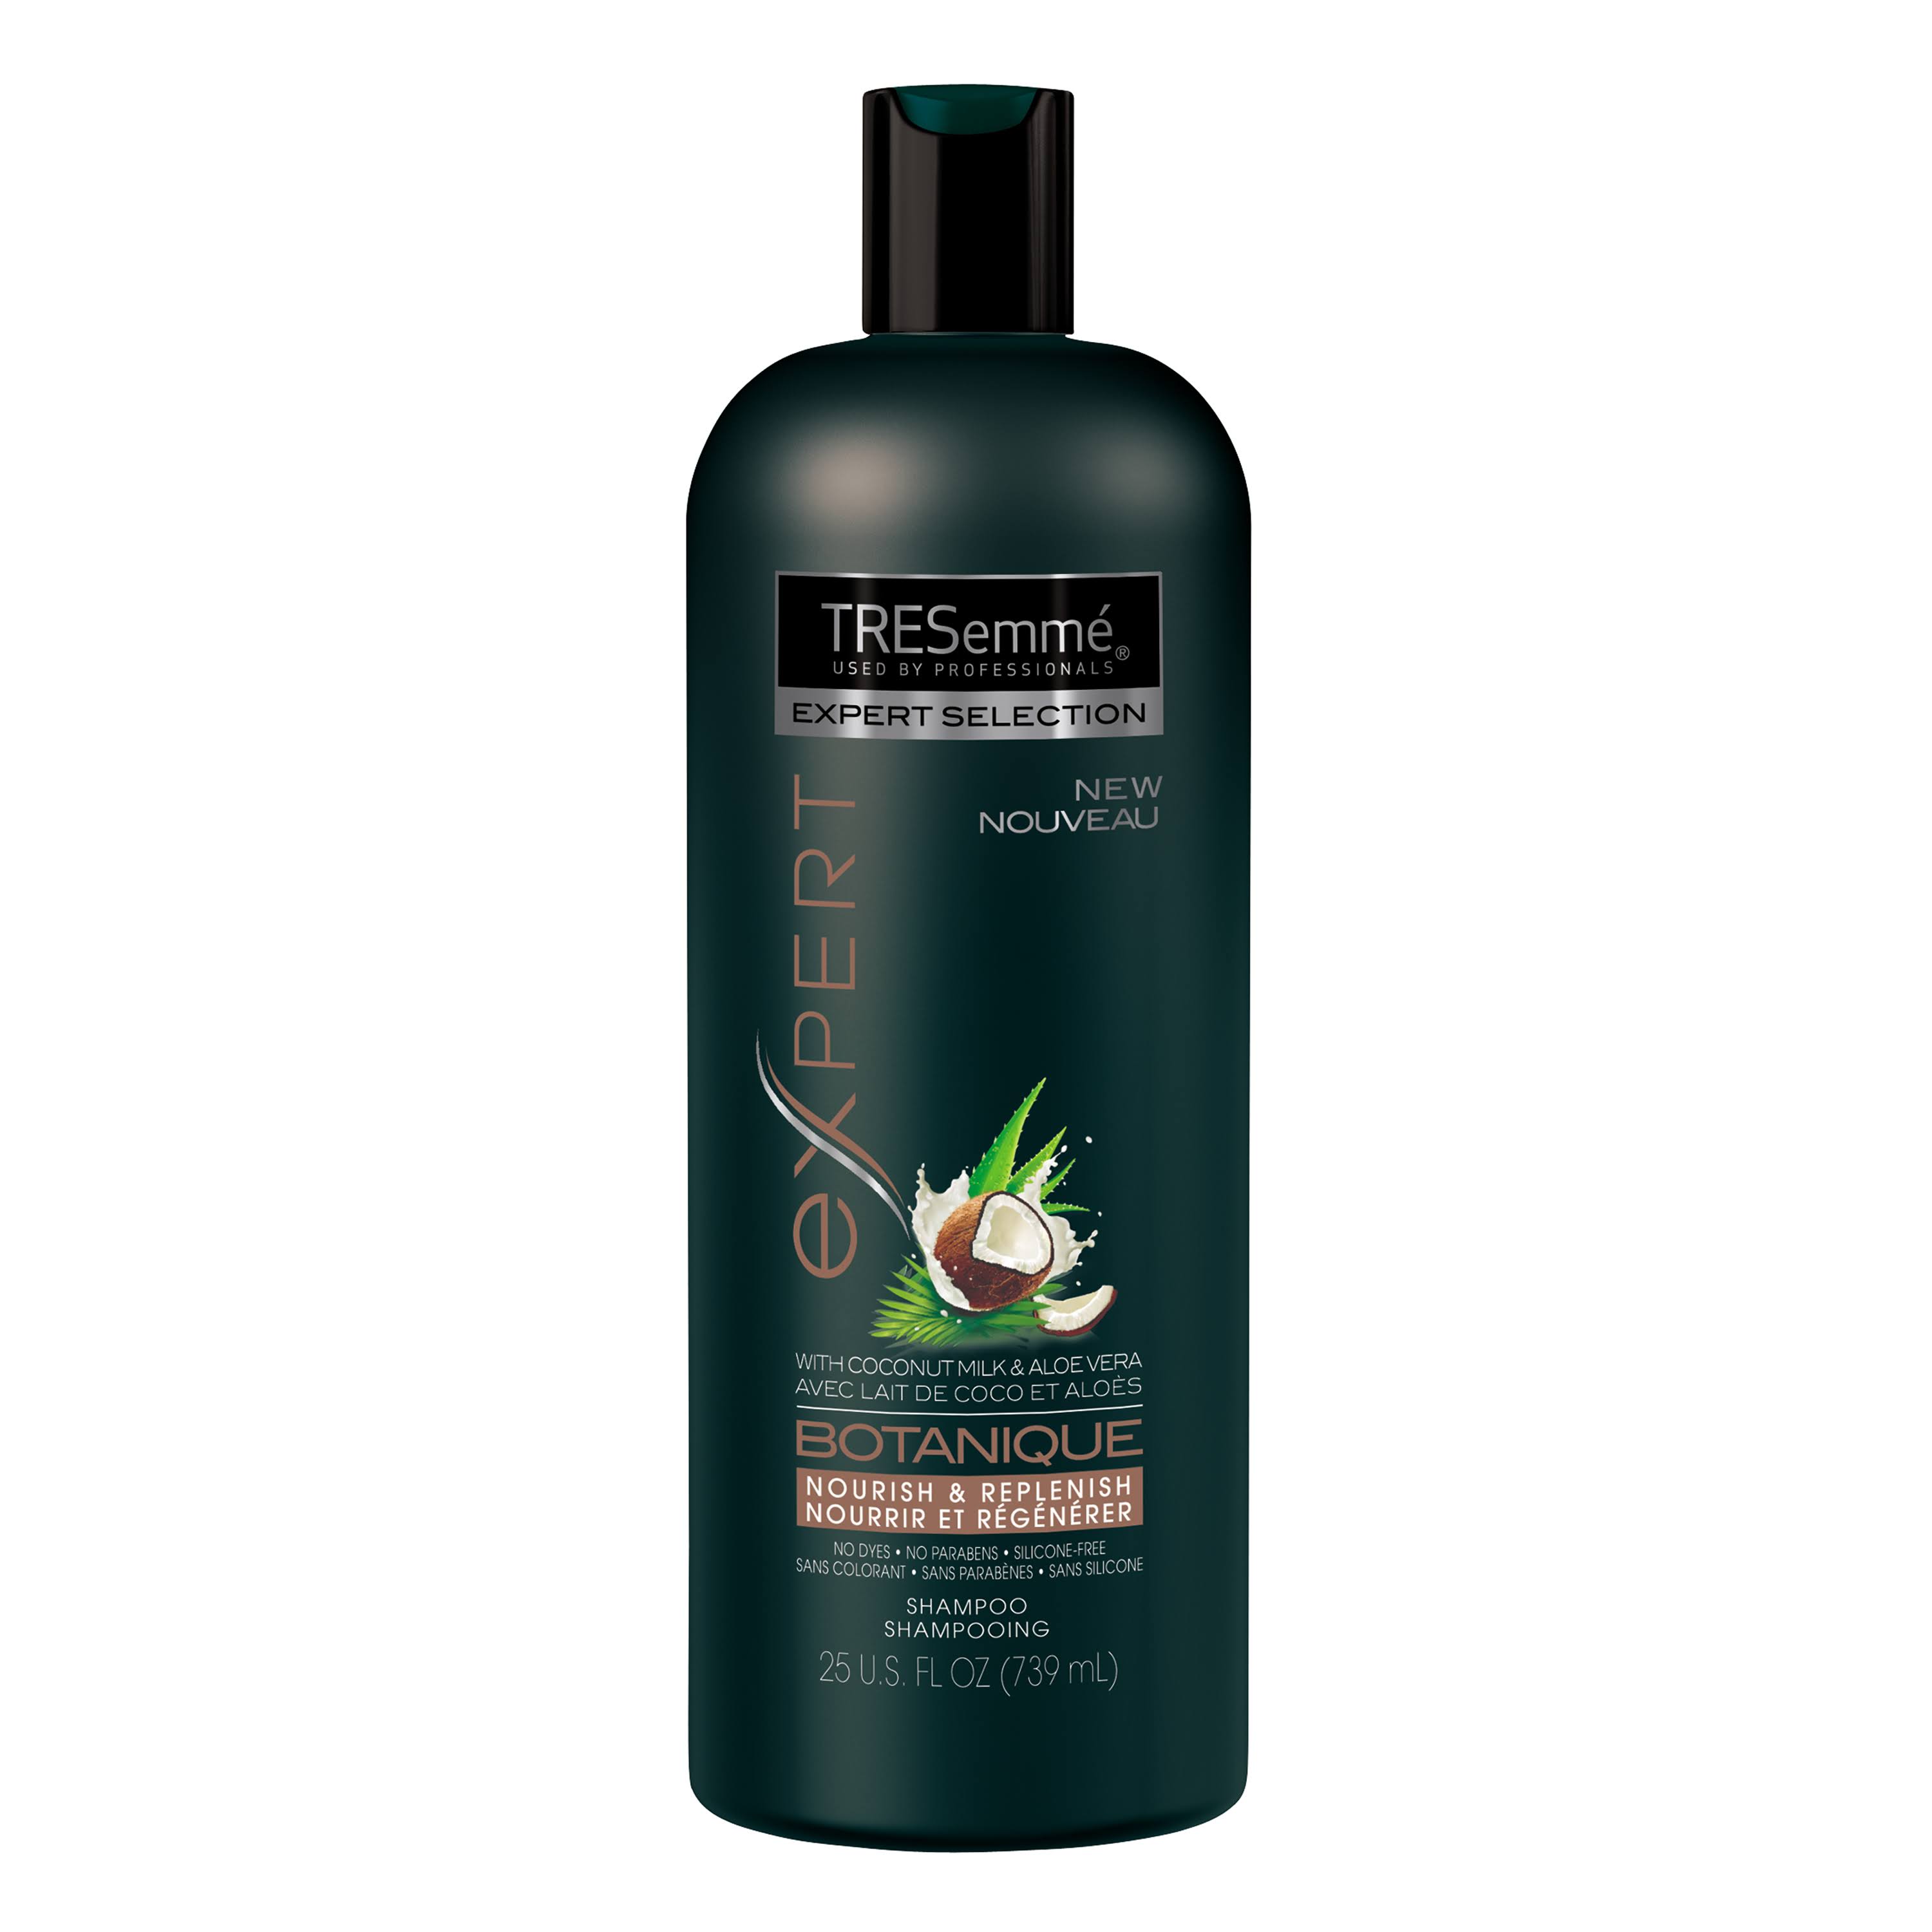 TRESemmé Expert Selection Botanique Shampoo - 25 fl oz